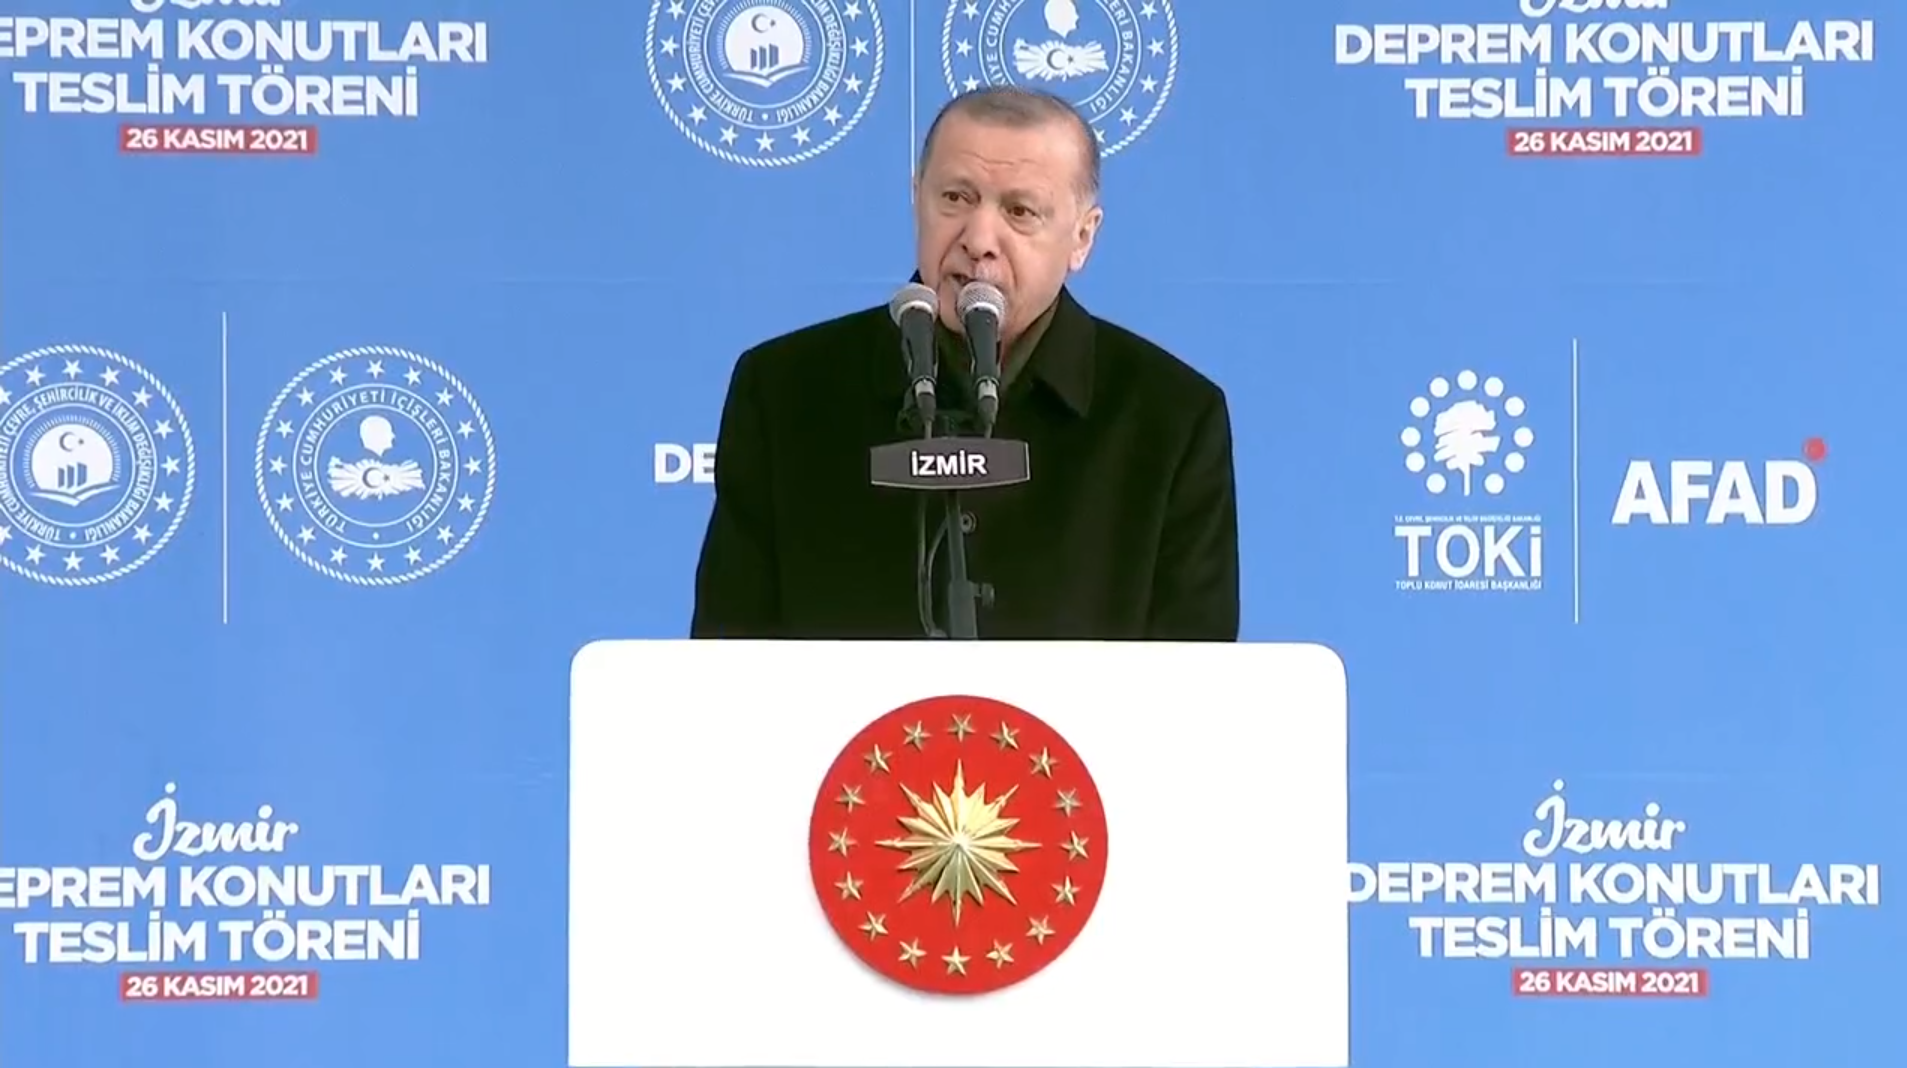 Cumhurbaşkanı Erdoğan, İzmir'de deprem konutlarının teslim töreninde konuştu: Bugüne kadar ne söz verdiysek yaptık